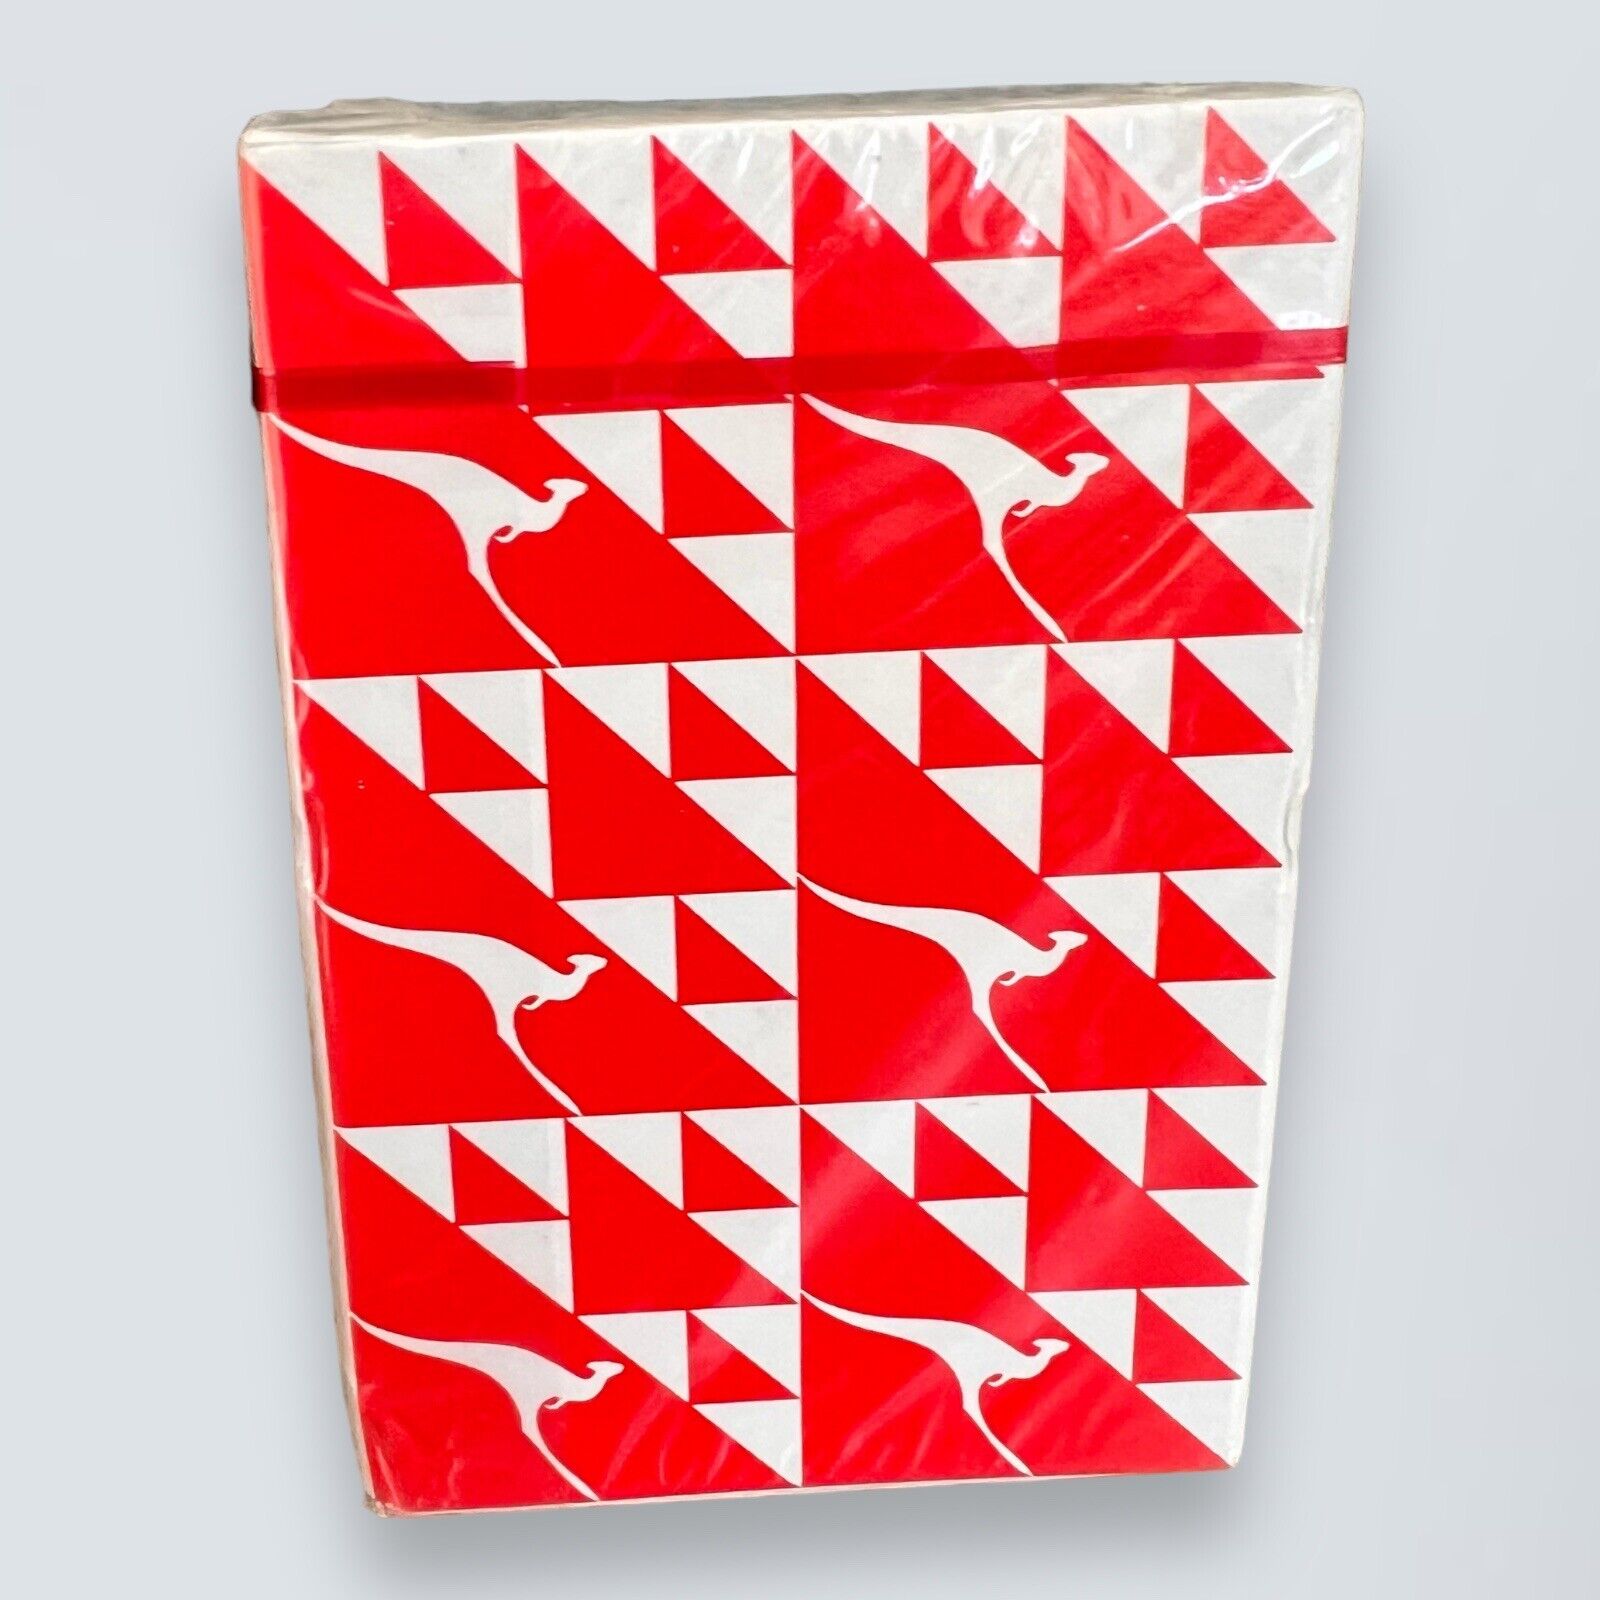 Qantas Airline Plane Aviation Kangaroo Deck Playing Cards Sealed Vintage